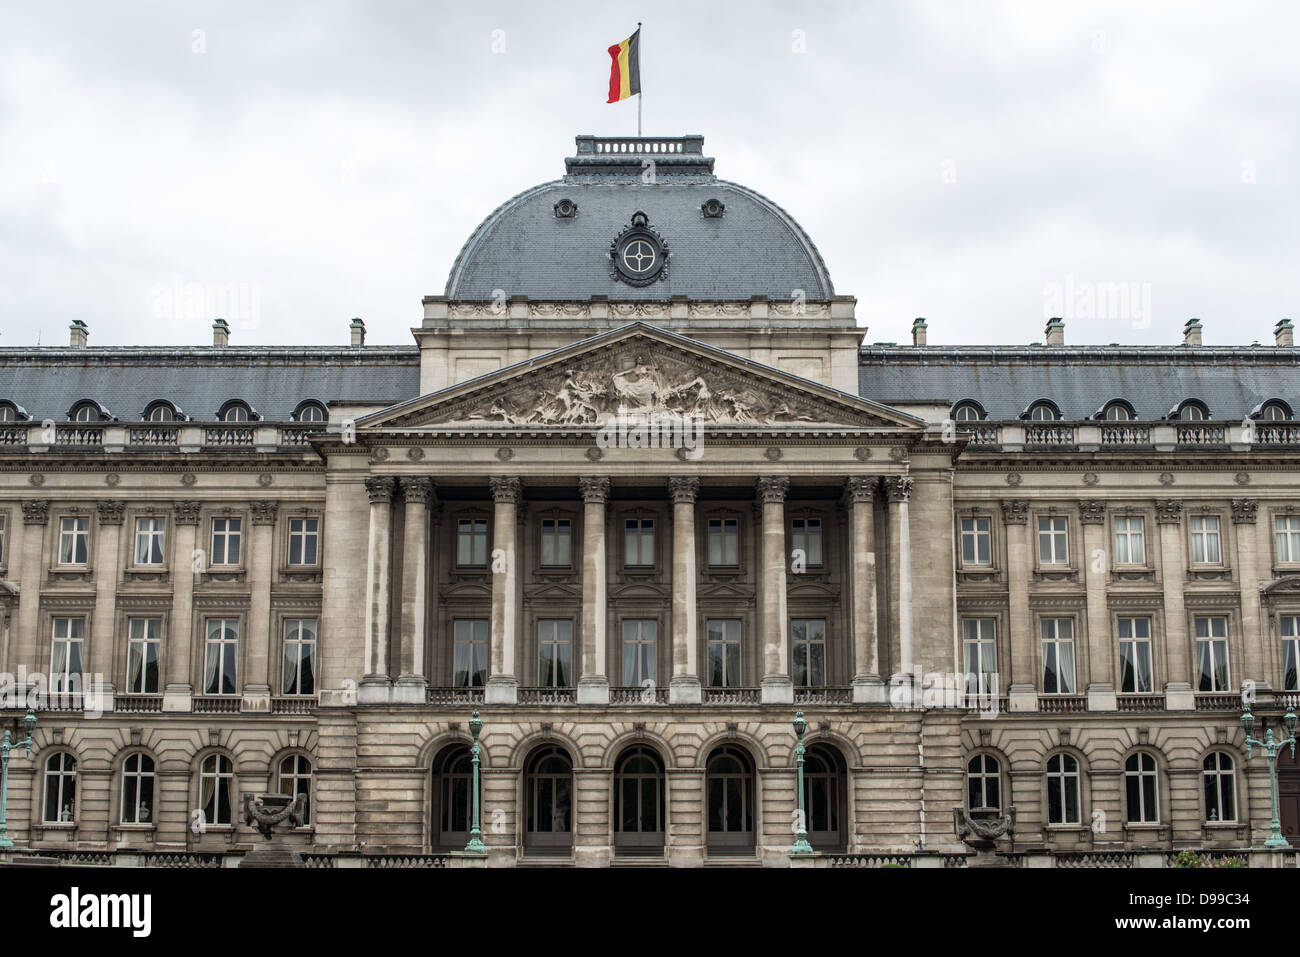 Bruxelles, Belgique - Le centre de l'avant du Palais Royal de Bruxelles, le palais de la famille royale belge. Banque D'Images